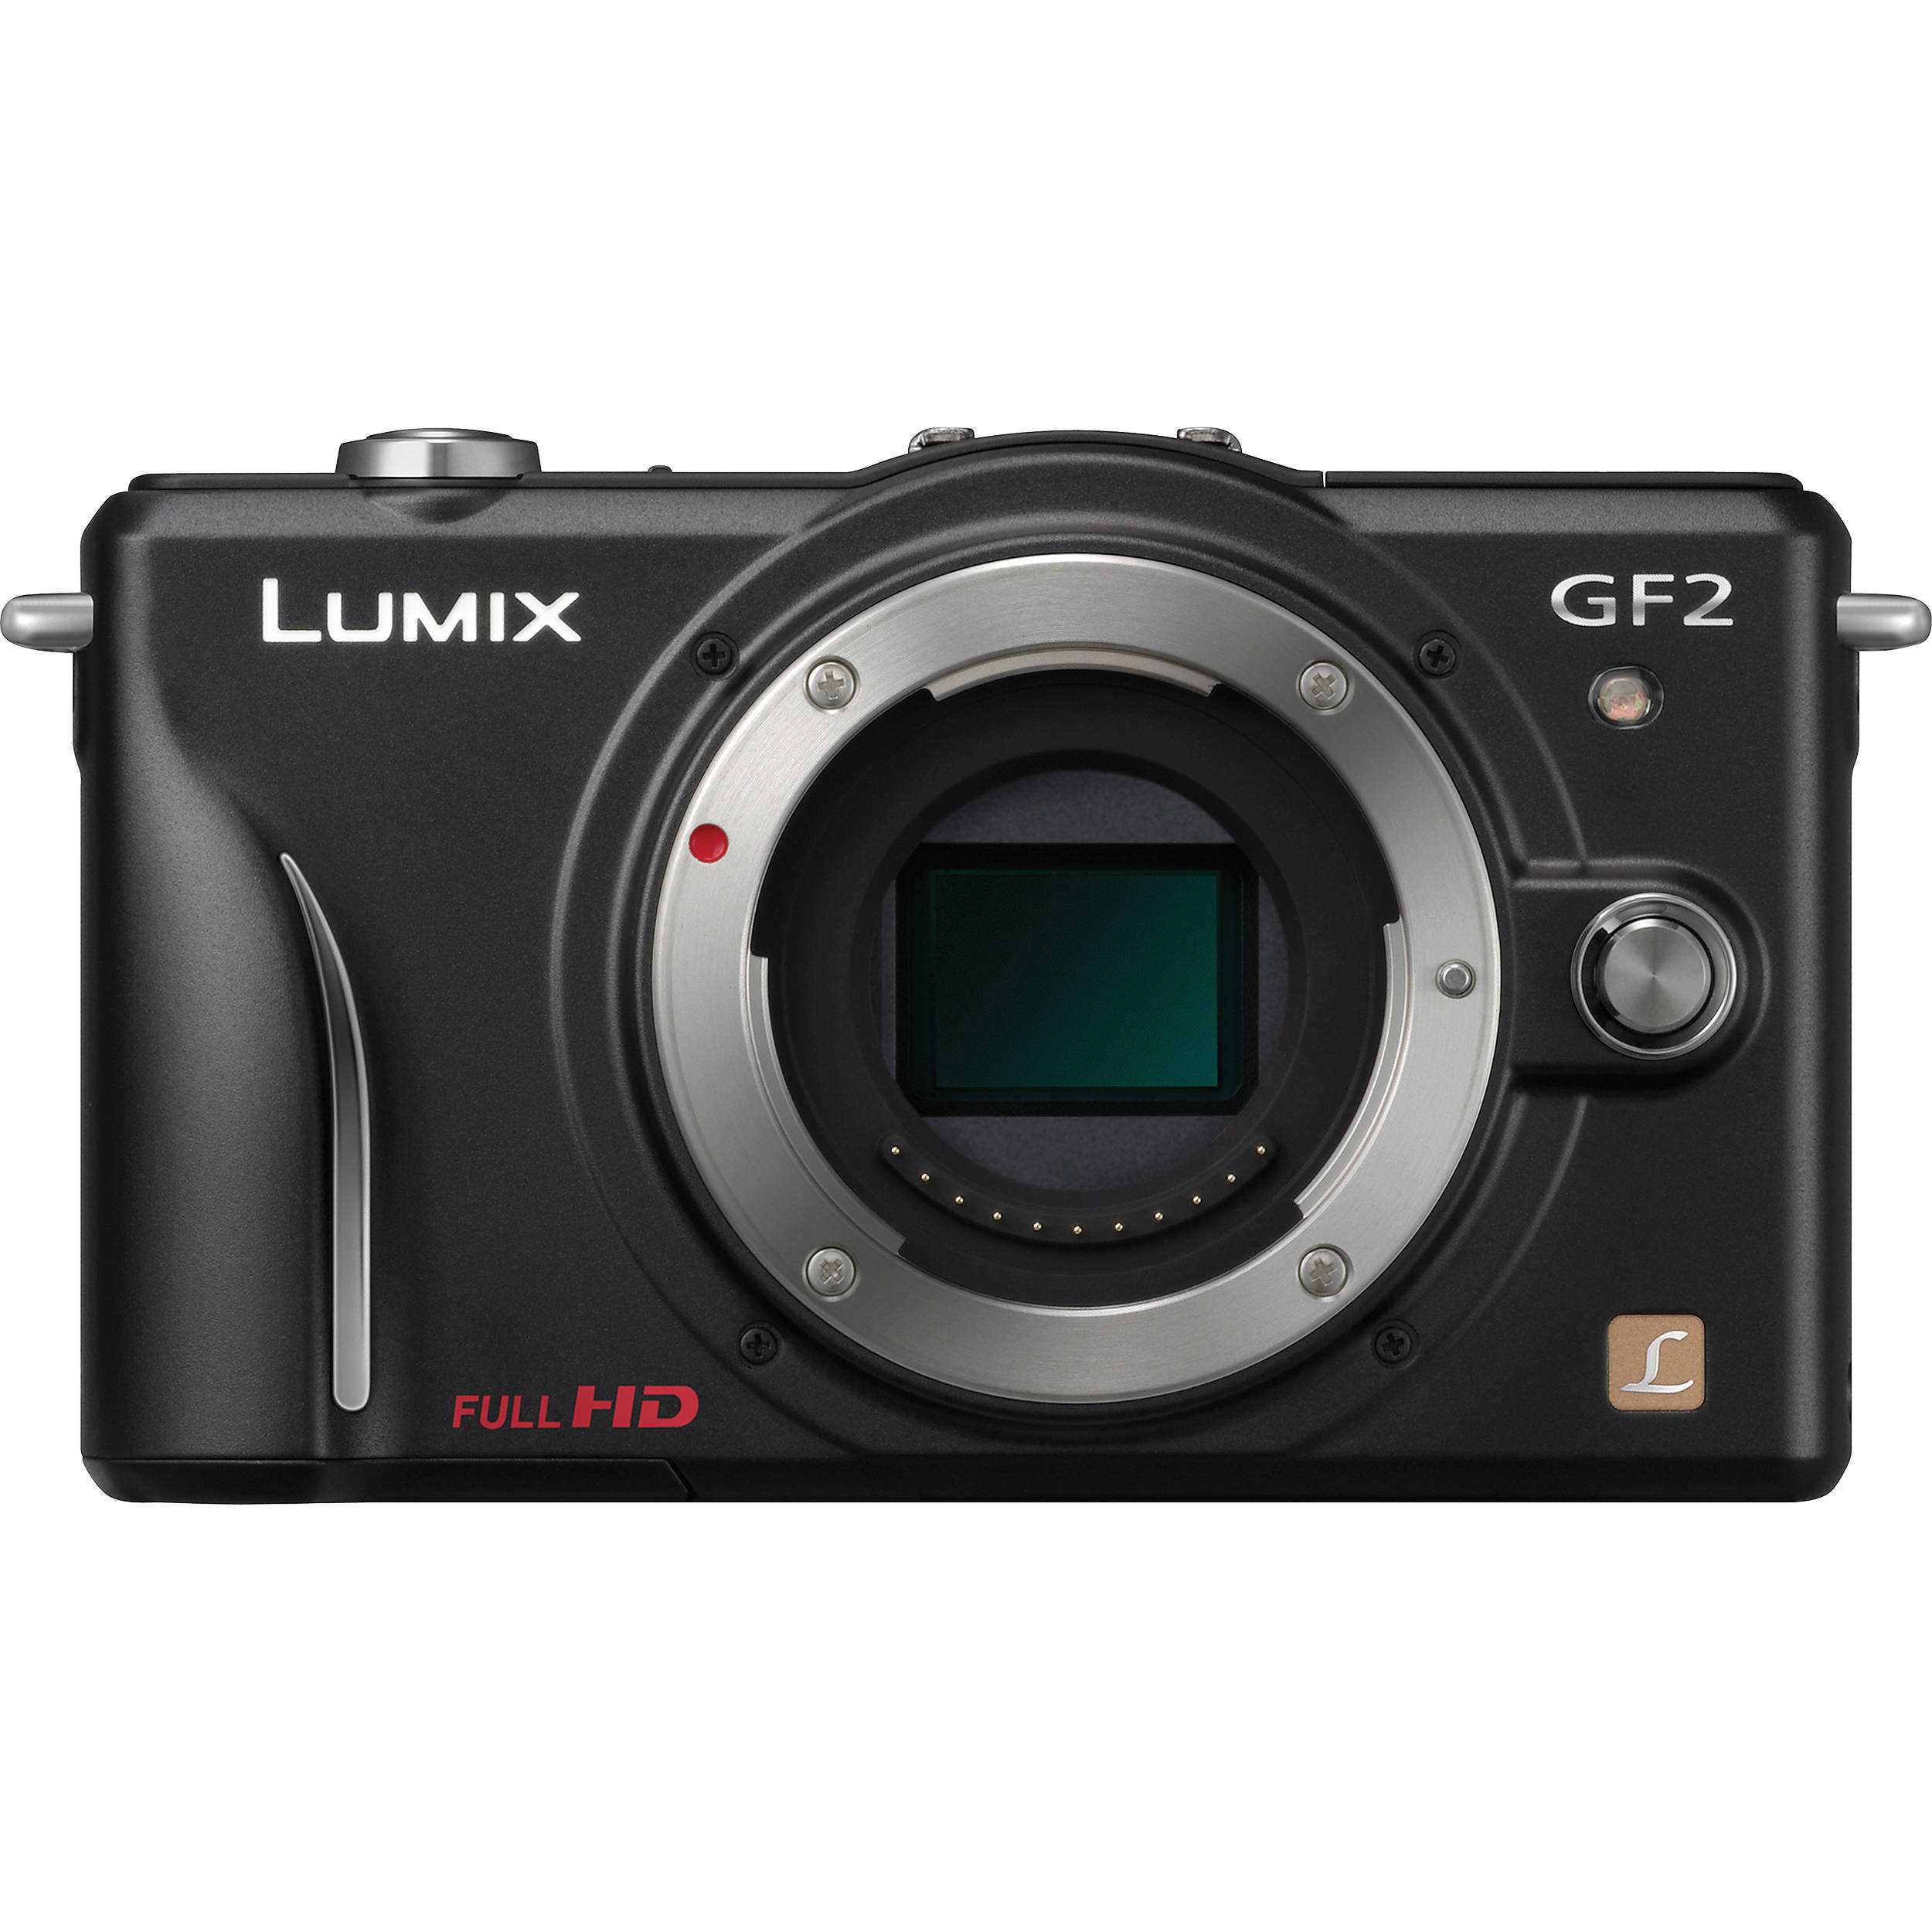 Panasonic lumix dmc-gf2 kit - купить , скидки, цена, отзывы, обзор, характеристики - фотоаппараты цифровые